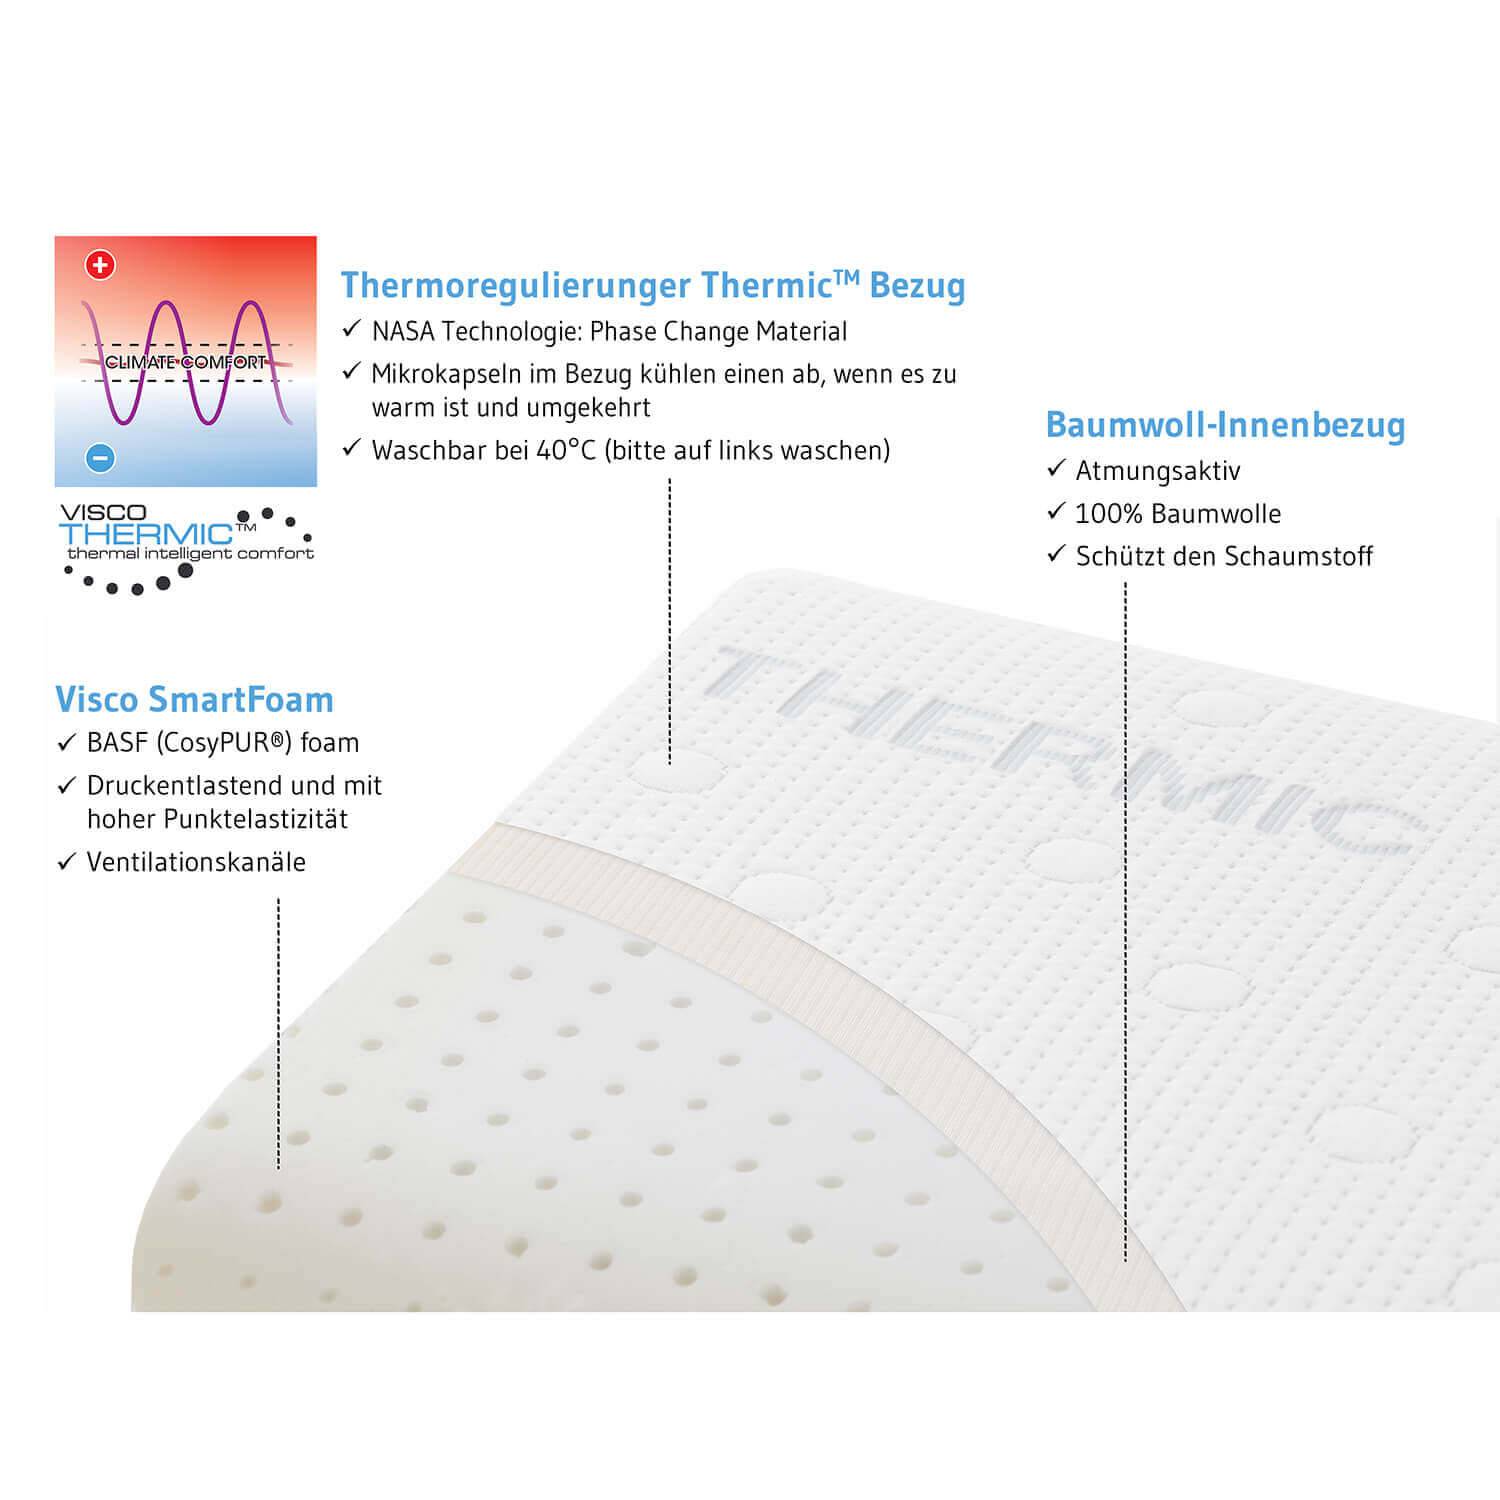 HWS-Nackenstützkissen NEKKAR mit thermoregulierendem Bezug, Kissen aus Visco Schaum, 40 x 60 cm - Third of Life